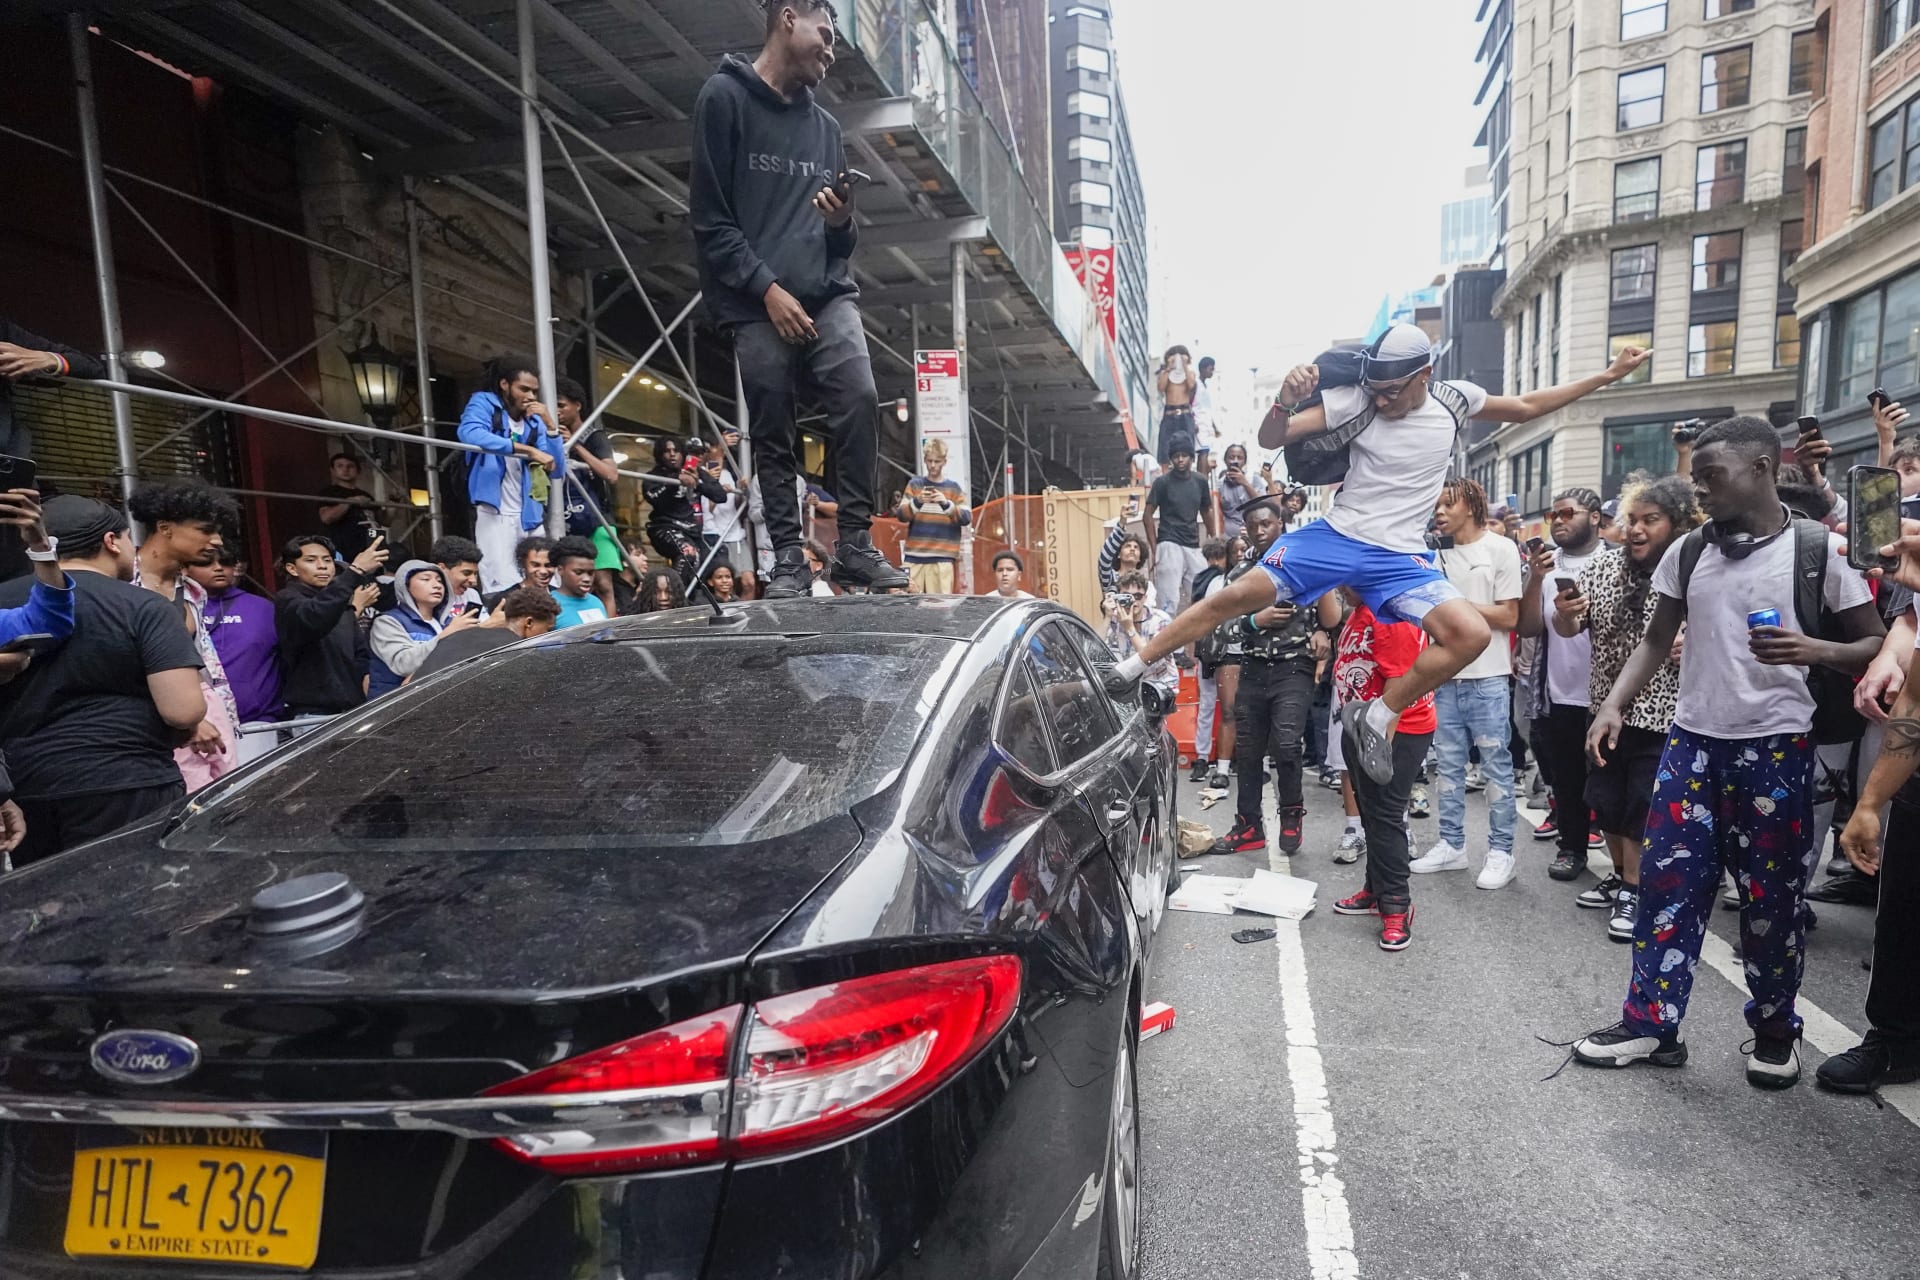 Akce svolená youtuberem Kaiem Cenatem v New Yorku se změnila v chaos. Na náměstí se sešly tisíce lidí kvůli rozdávání herních konzolí, řada z nich začala ničit vozidla, házet věcmi a útočit.